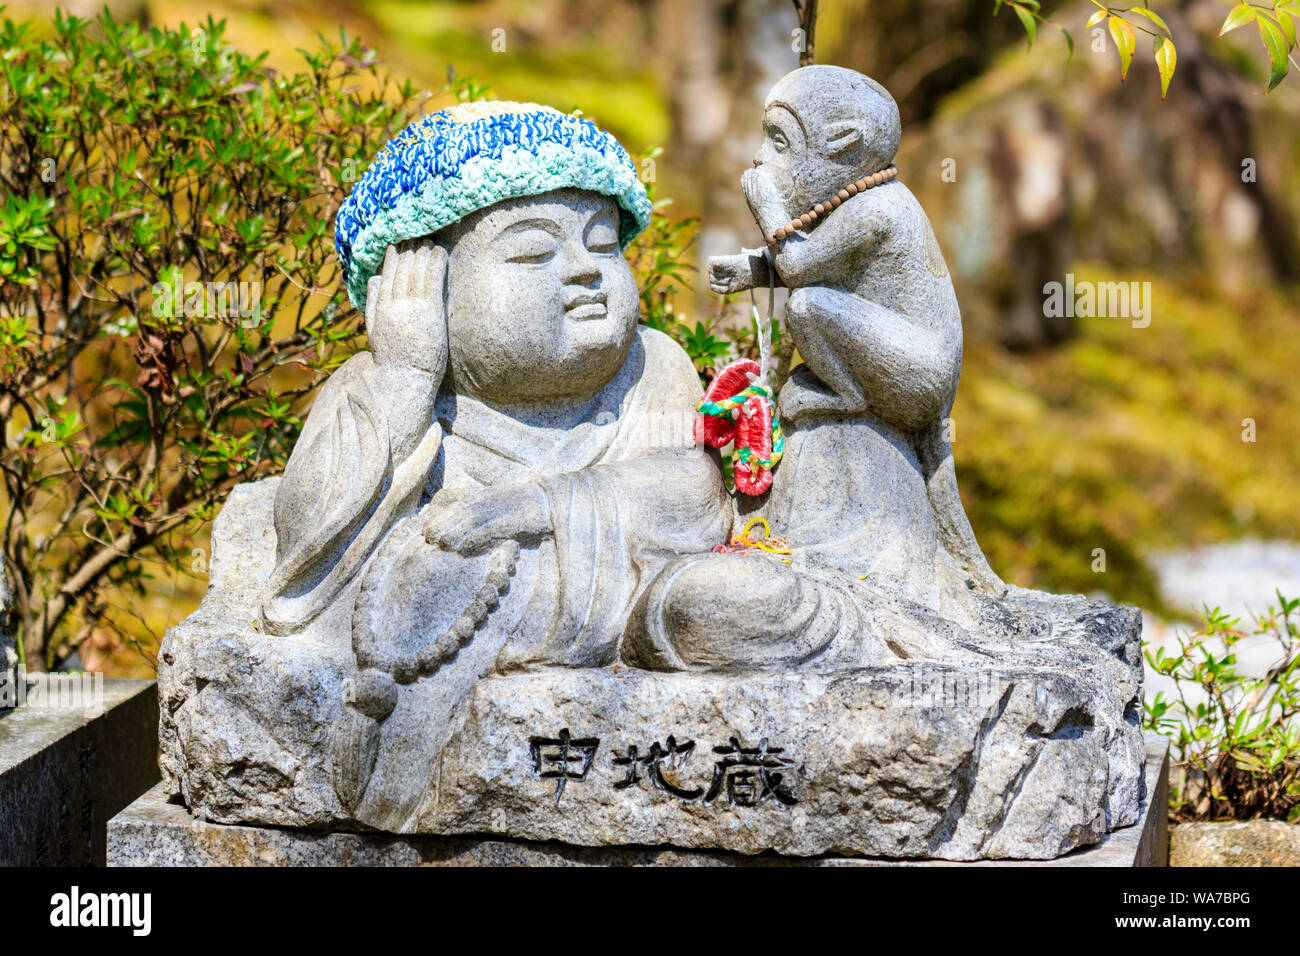 Giappone, Miyajima. Daisho-nel tempio. Jizo piccola statua di reclinazione un monaco buddista di indossare una maglia di lana hat, e una scimmia seduta accanto a lui che si mangia. Foto Stock